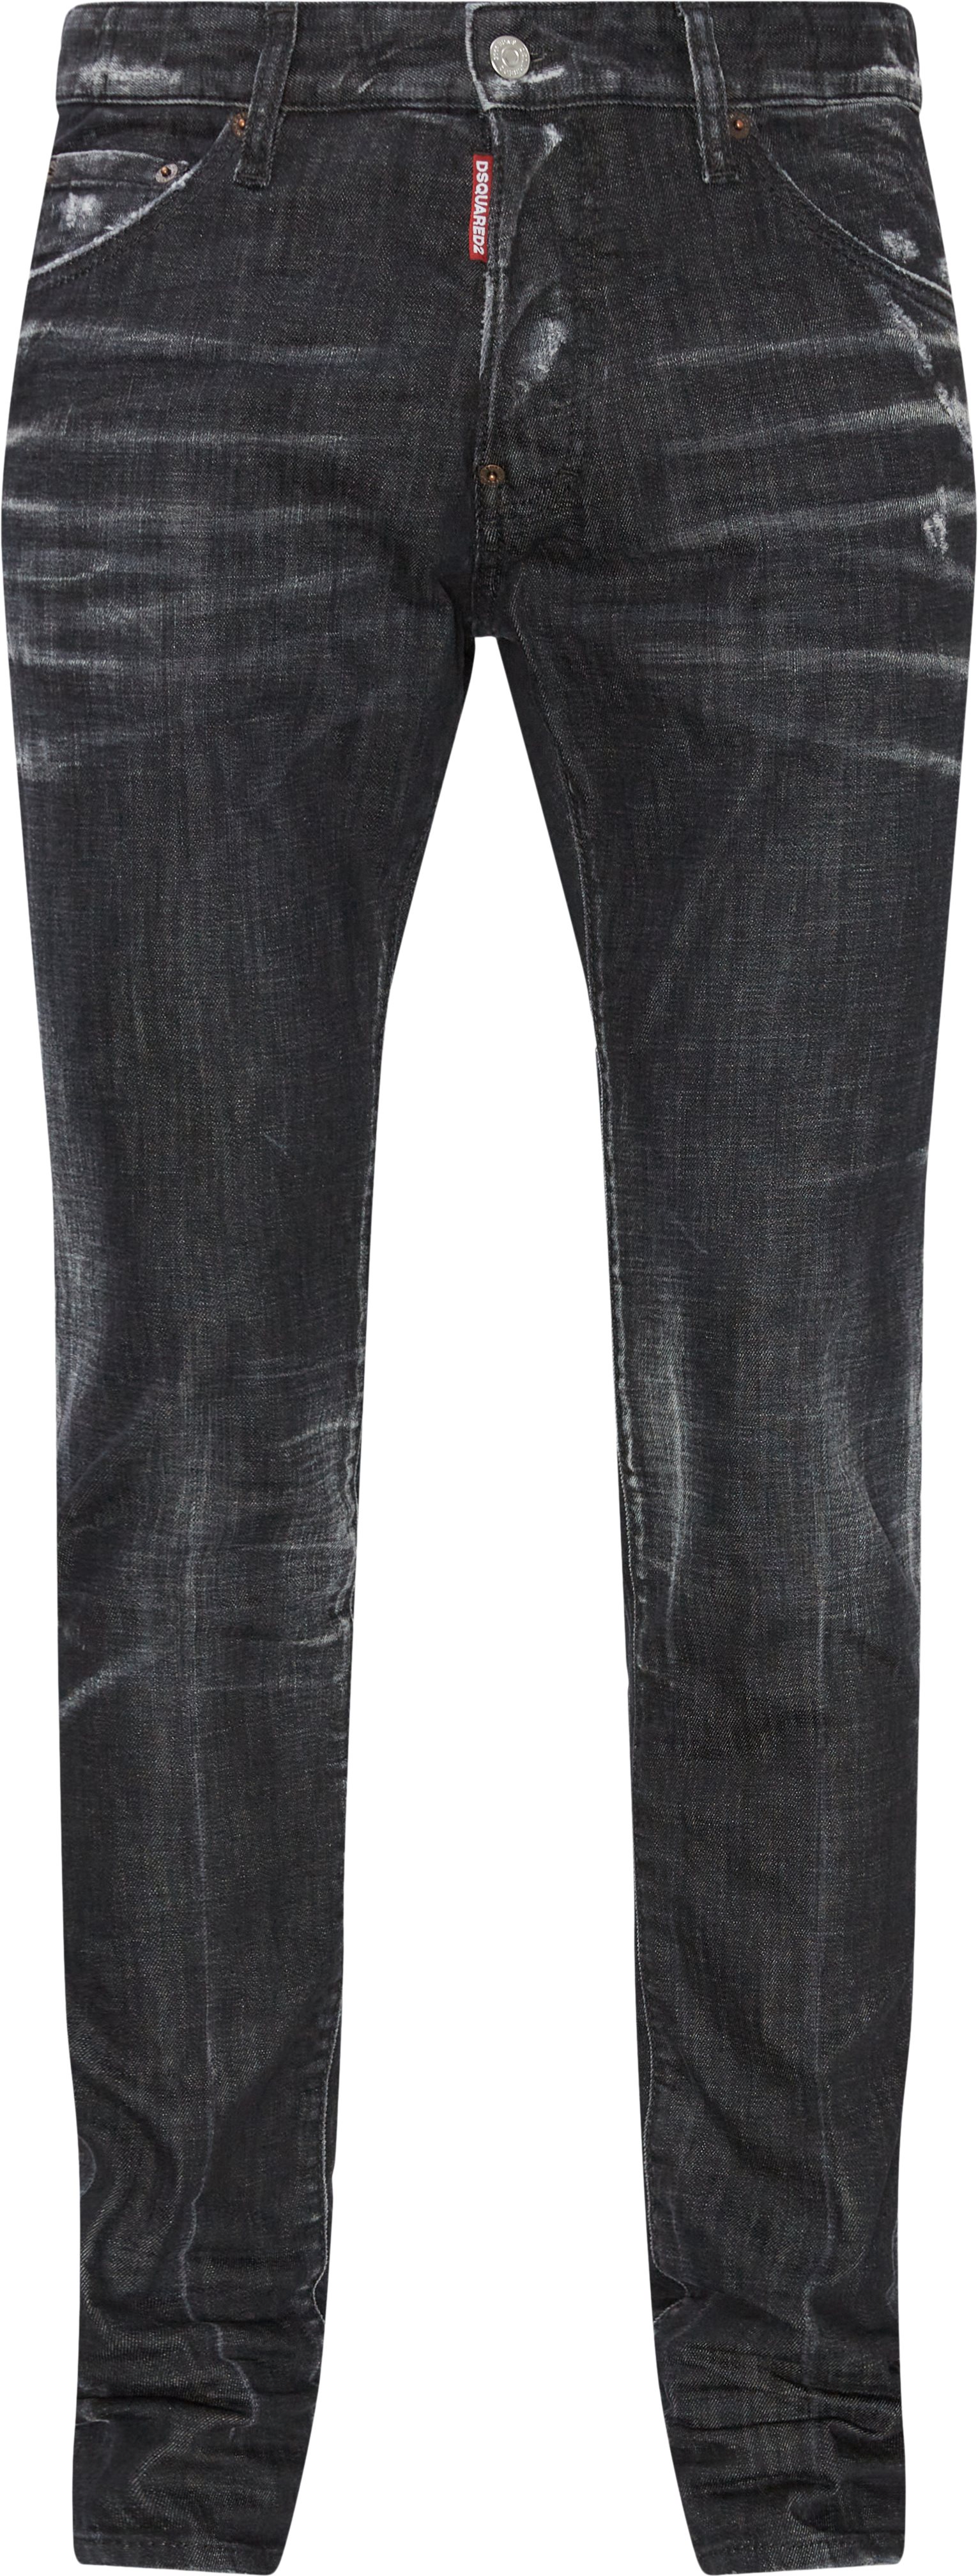 Dsquared2 Jeans S71LB1046 S30357 Black